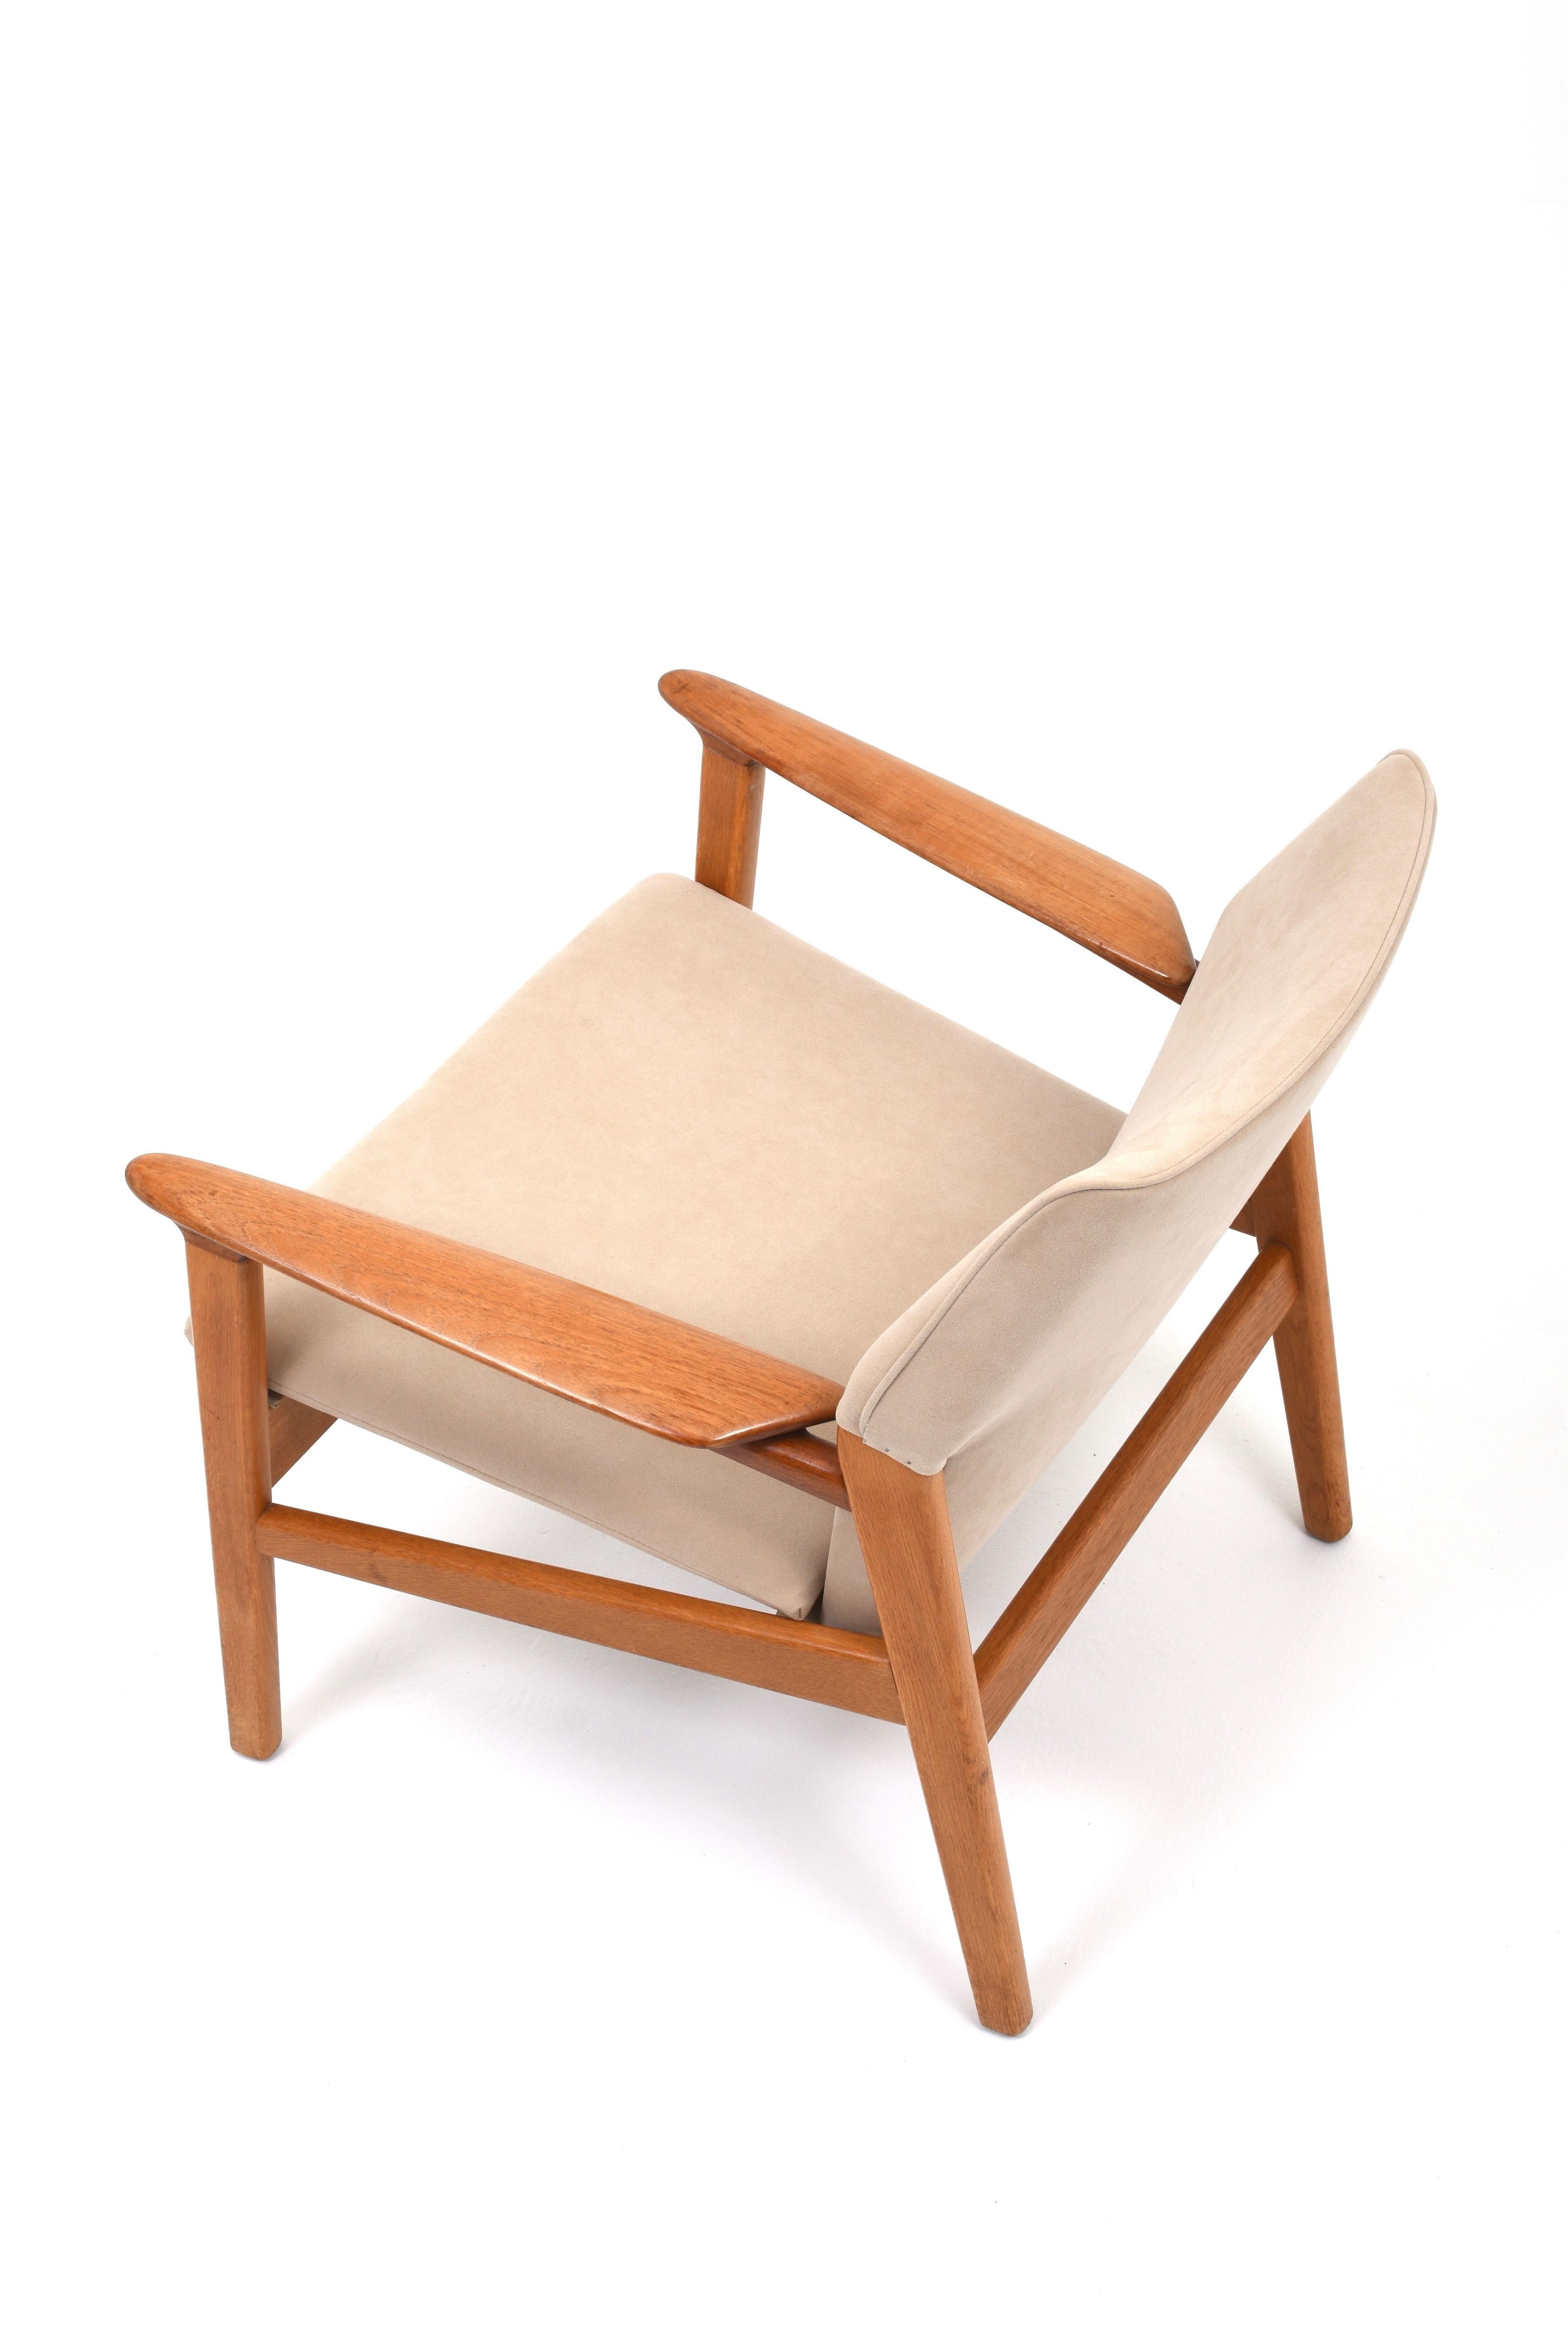 Fantastisch bequemer und gut durchdachter Sessel von Hans Olsen für Gärsnäs, 1960er Jahre.

Der Sessel wurde neu gepolstert und wir haben ihn mit einem beigen, wildlederähnlichen Stoff neu bezogen. Der Rahmen ist aus Eiche und Teakholz gefertigt.
